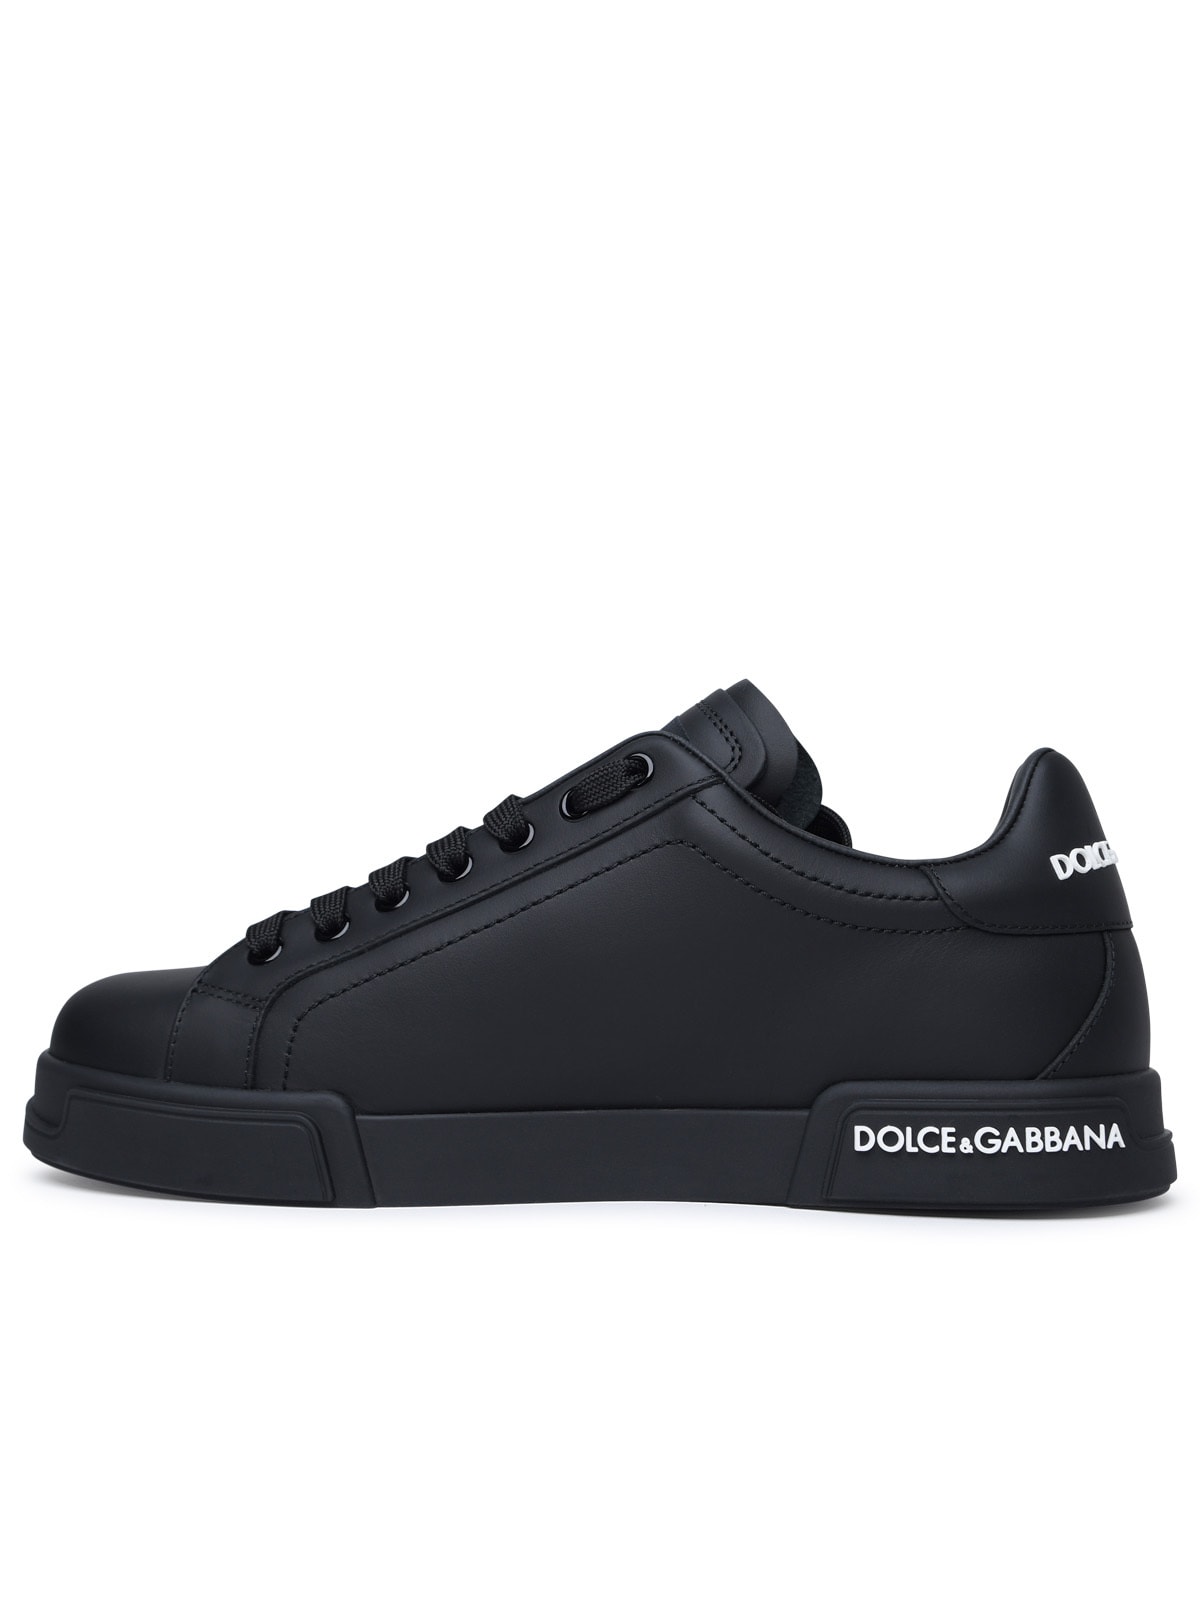 Shop Dolce & Gabbana Portofino Black Calf Leather Sneakers